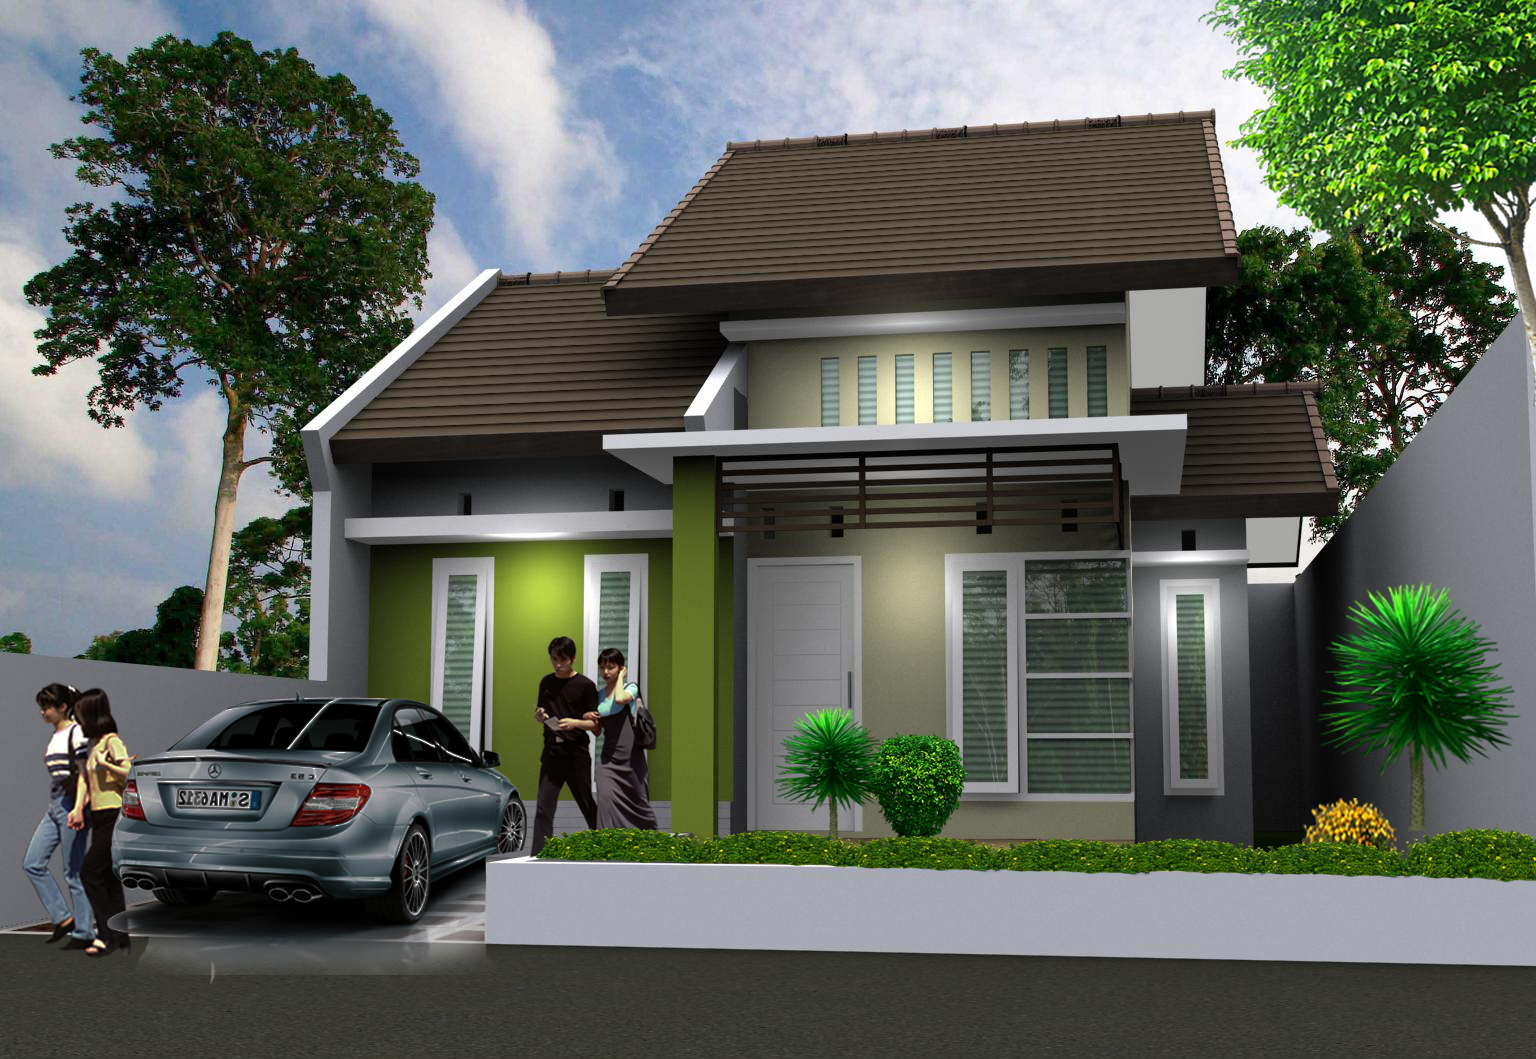 21 Model Rumah  Sederhana Tapi Kelihatan Mewah  Terbaru 2021 Dekor Rumah 